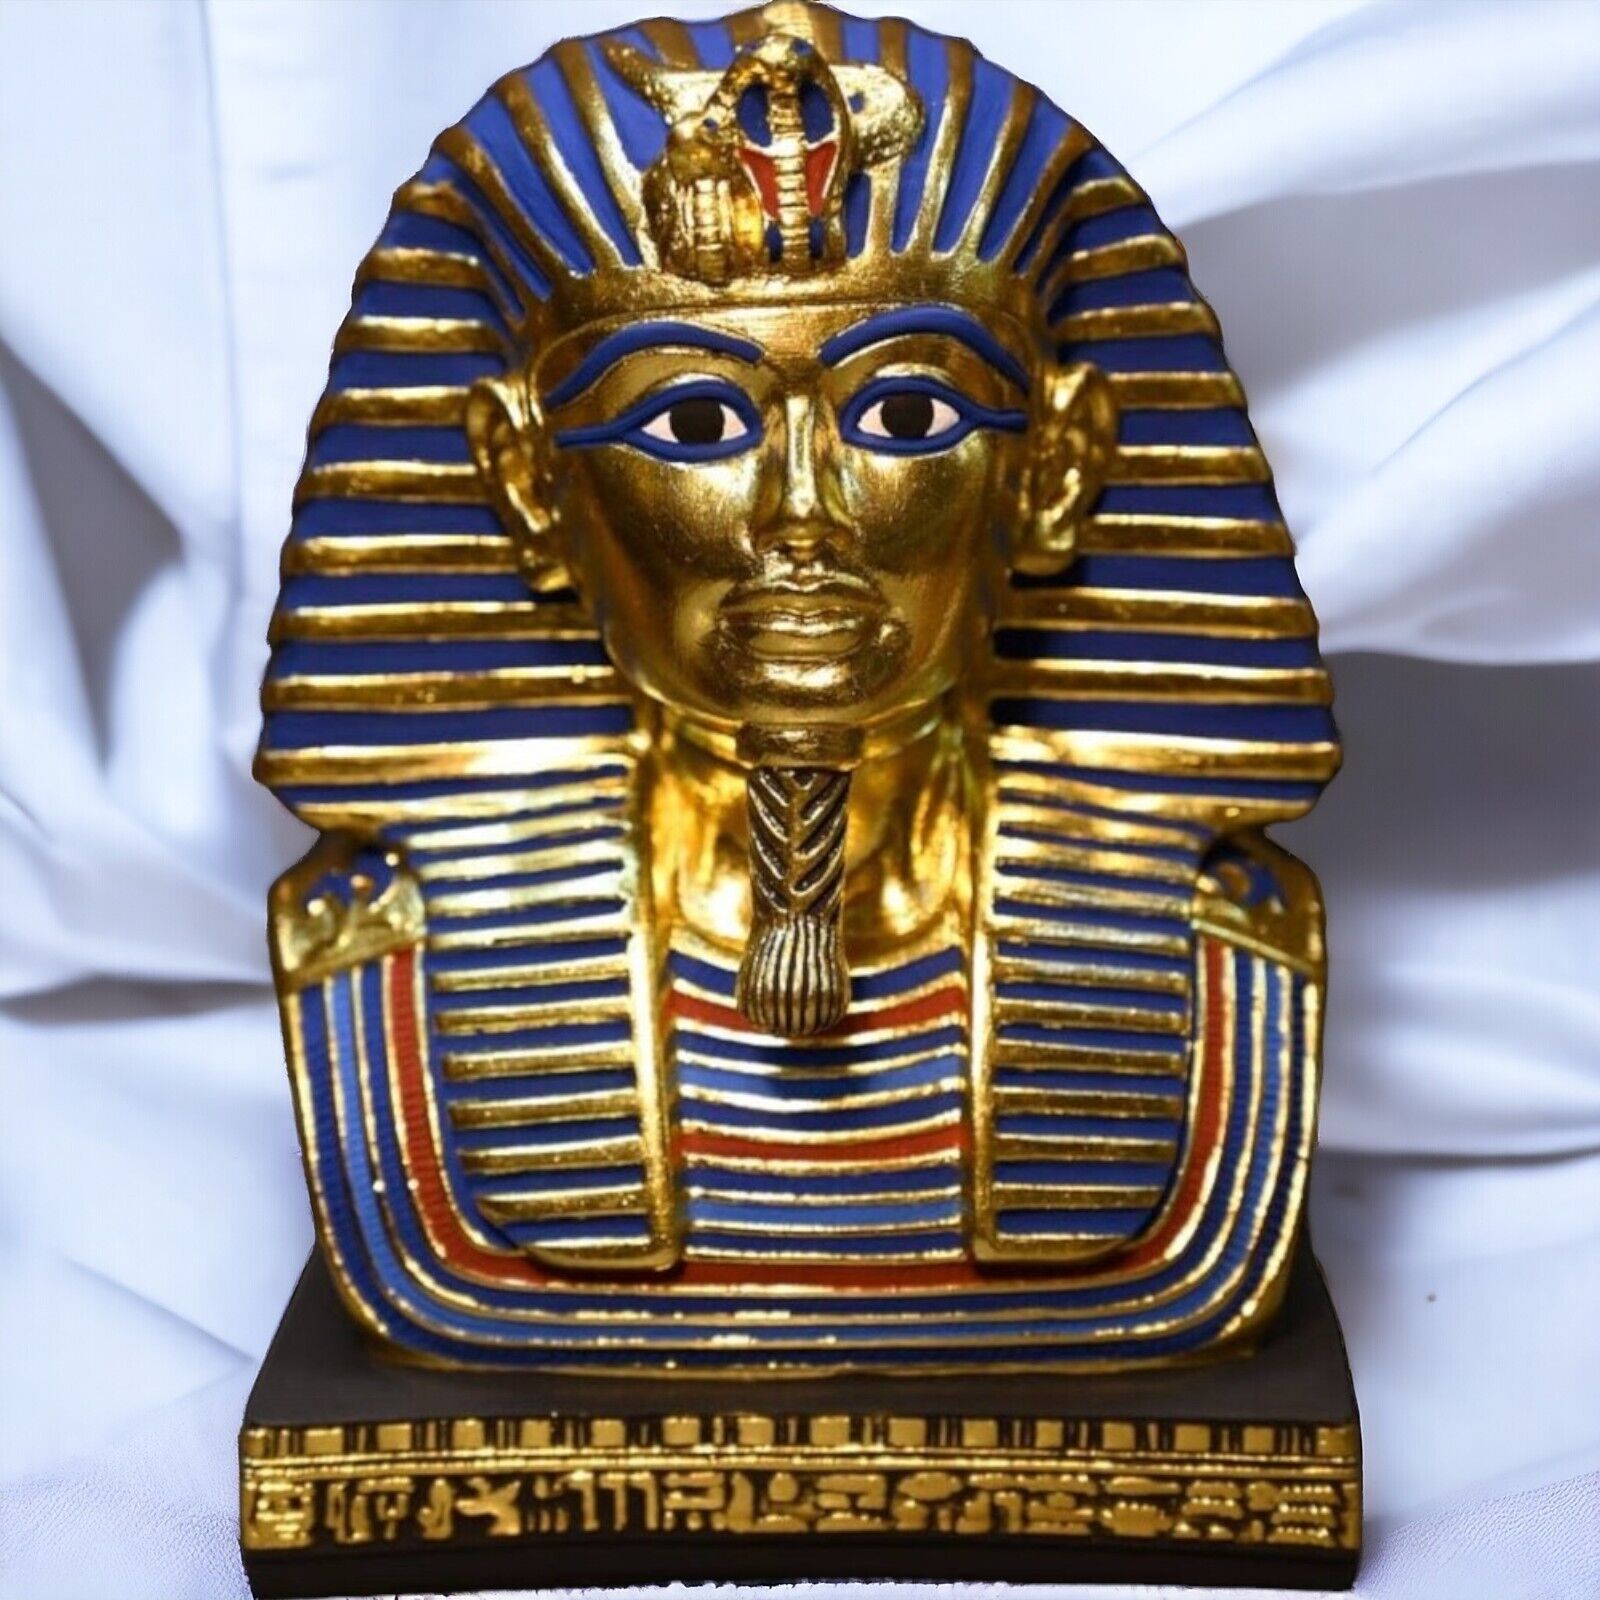 UNIQUE ANCIENT EGYPTIAN ANTIQUES Heavy Statue Bust Of King Tutankhamun Egypt BC